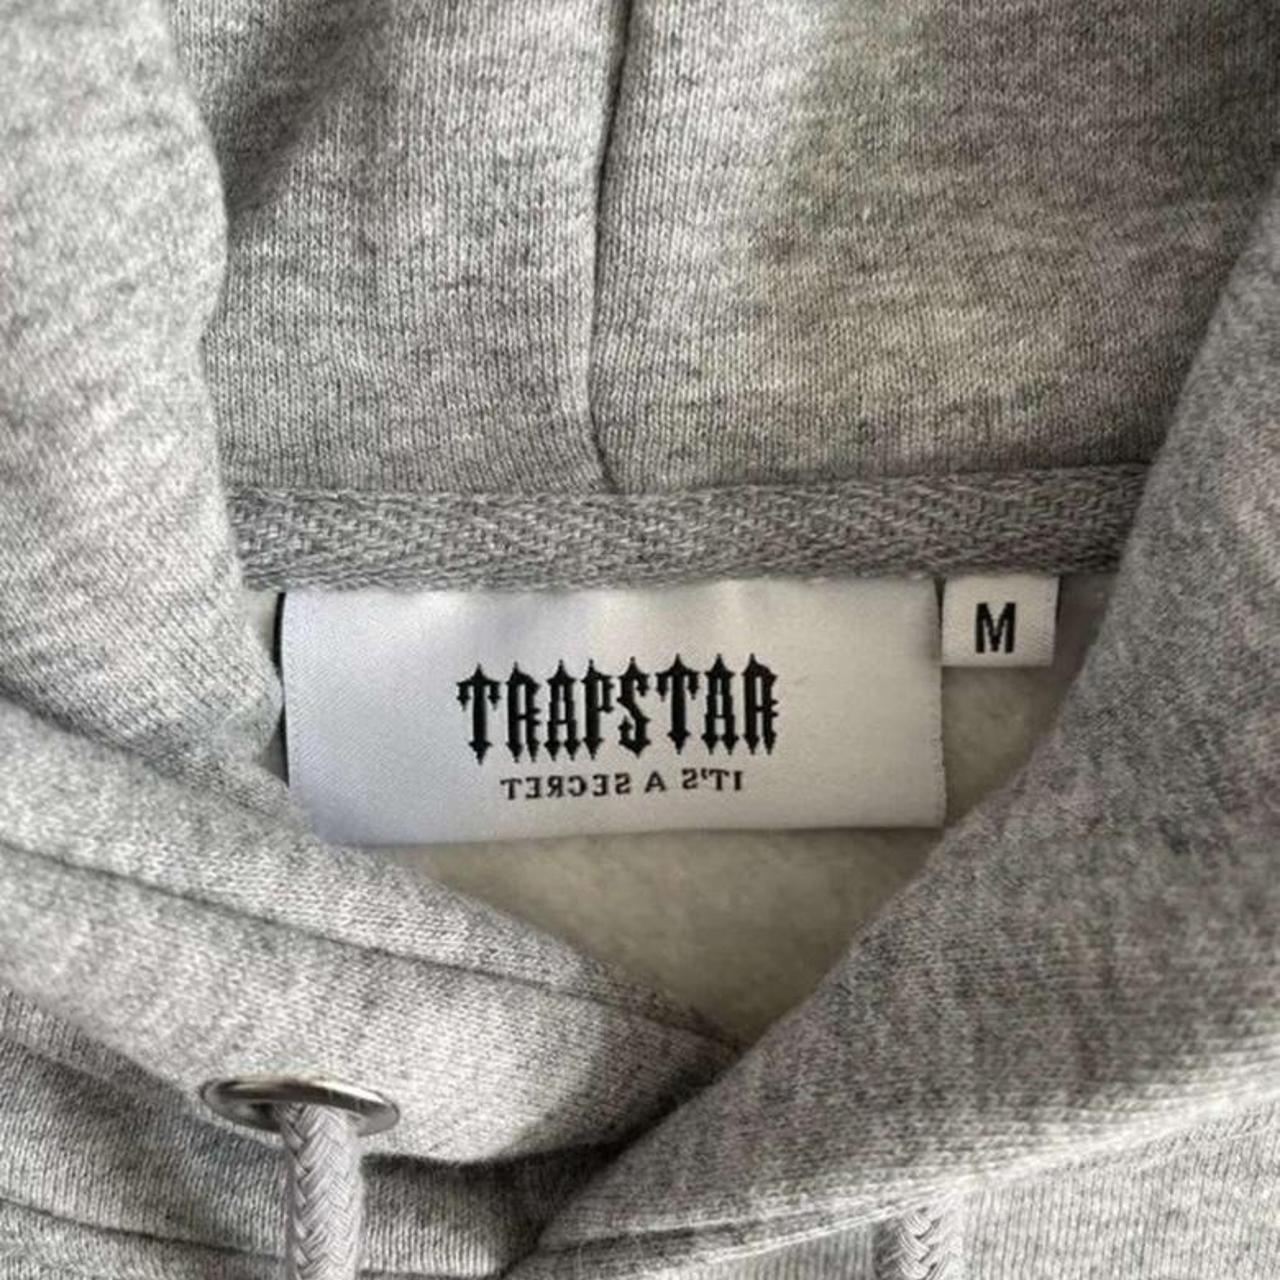 Trapstar set worn like twice - Depop